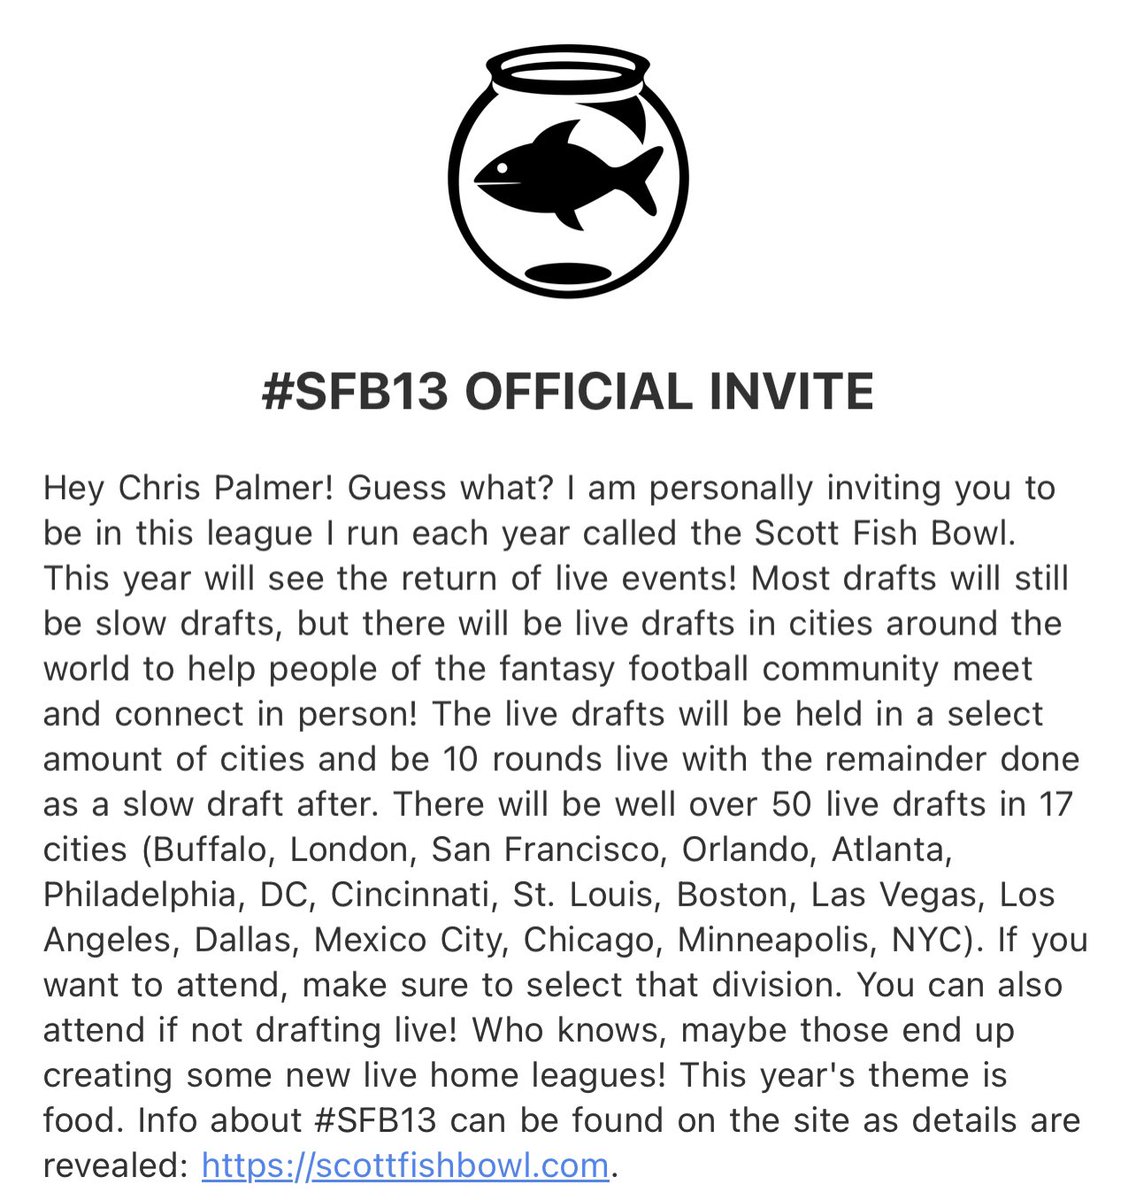 Got my invite #sfb13